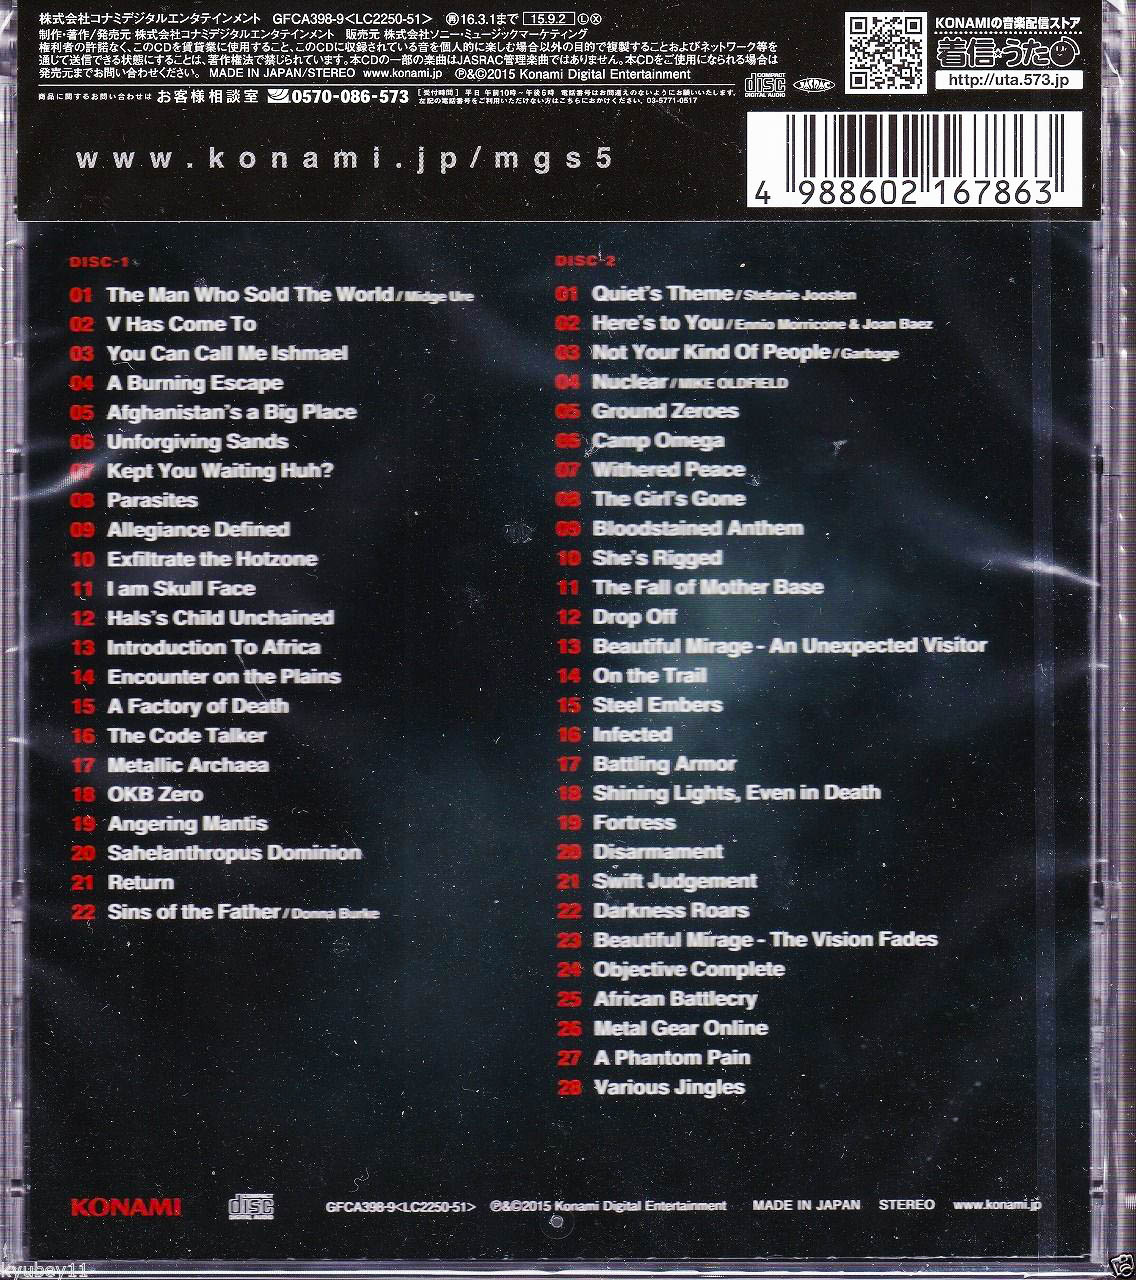 Metal Gear Solid V Original Soundtrack Коробка от диска сзади